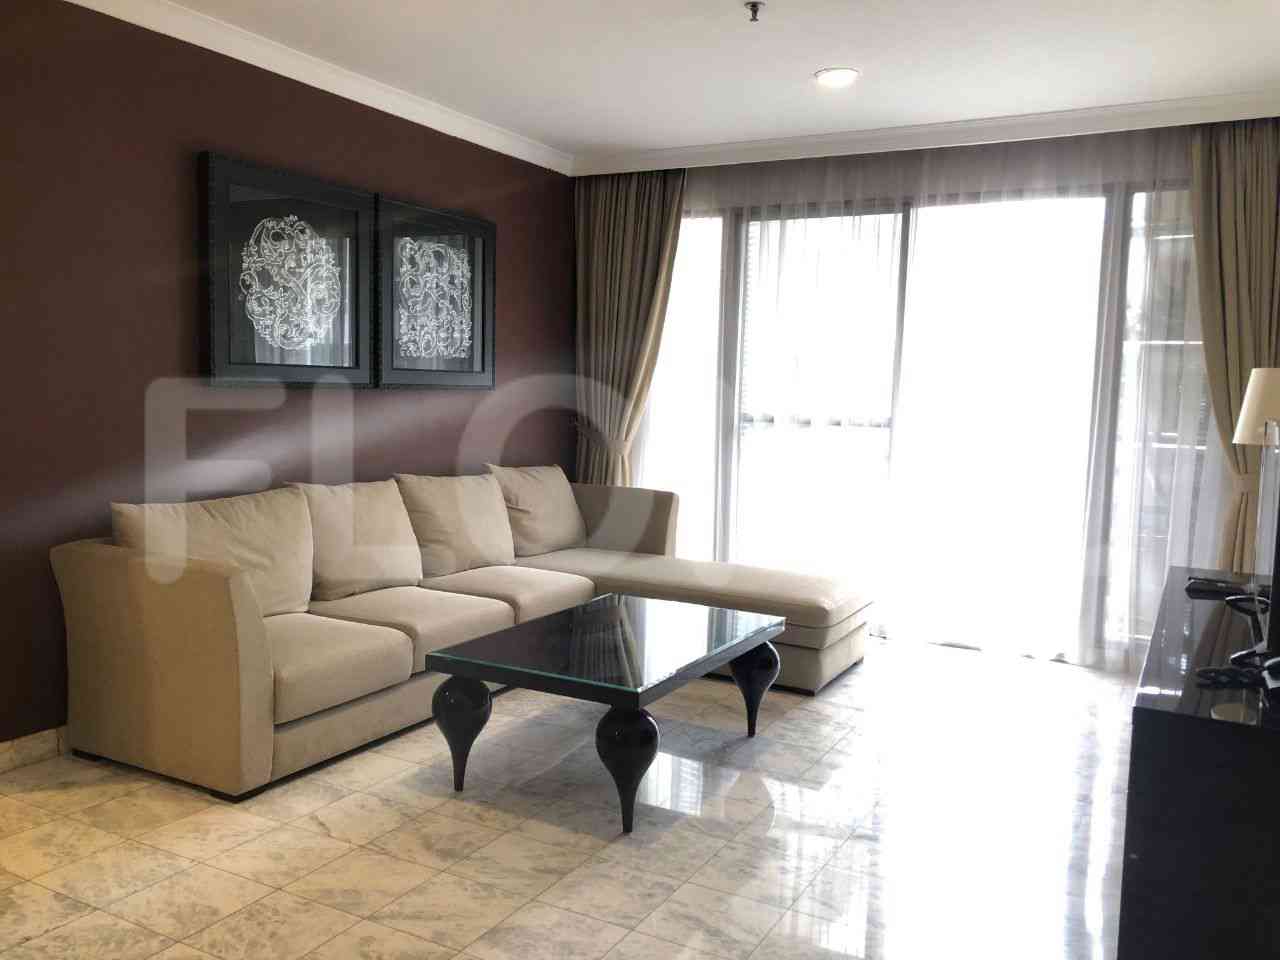 3 Bedroom on 4th Floor for Rent in Menteng Regency - fmeb58 1